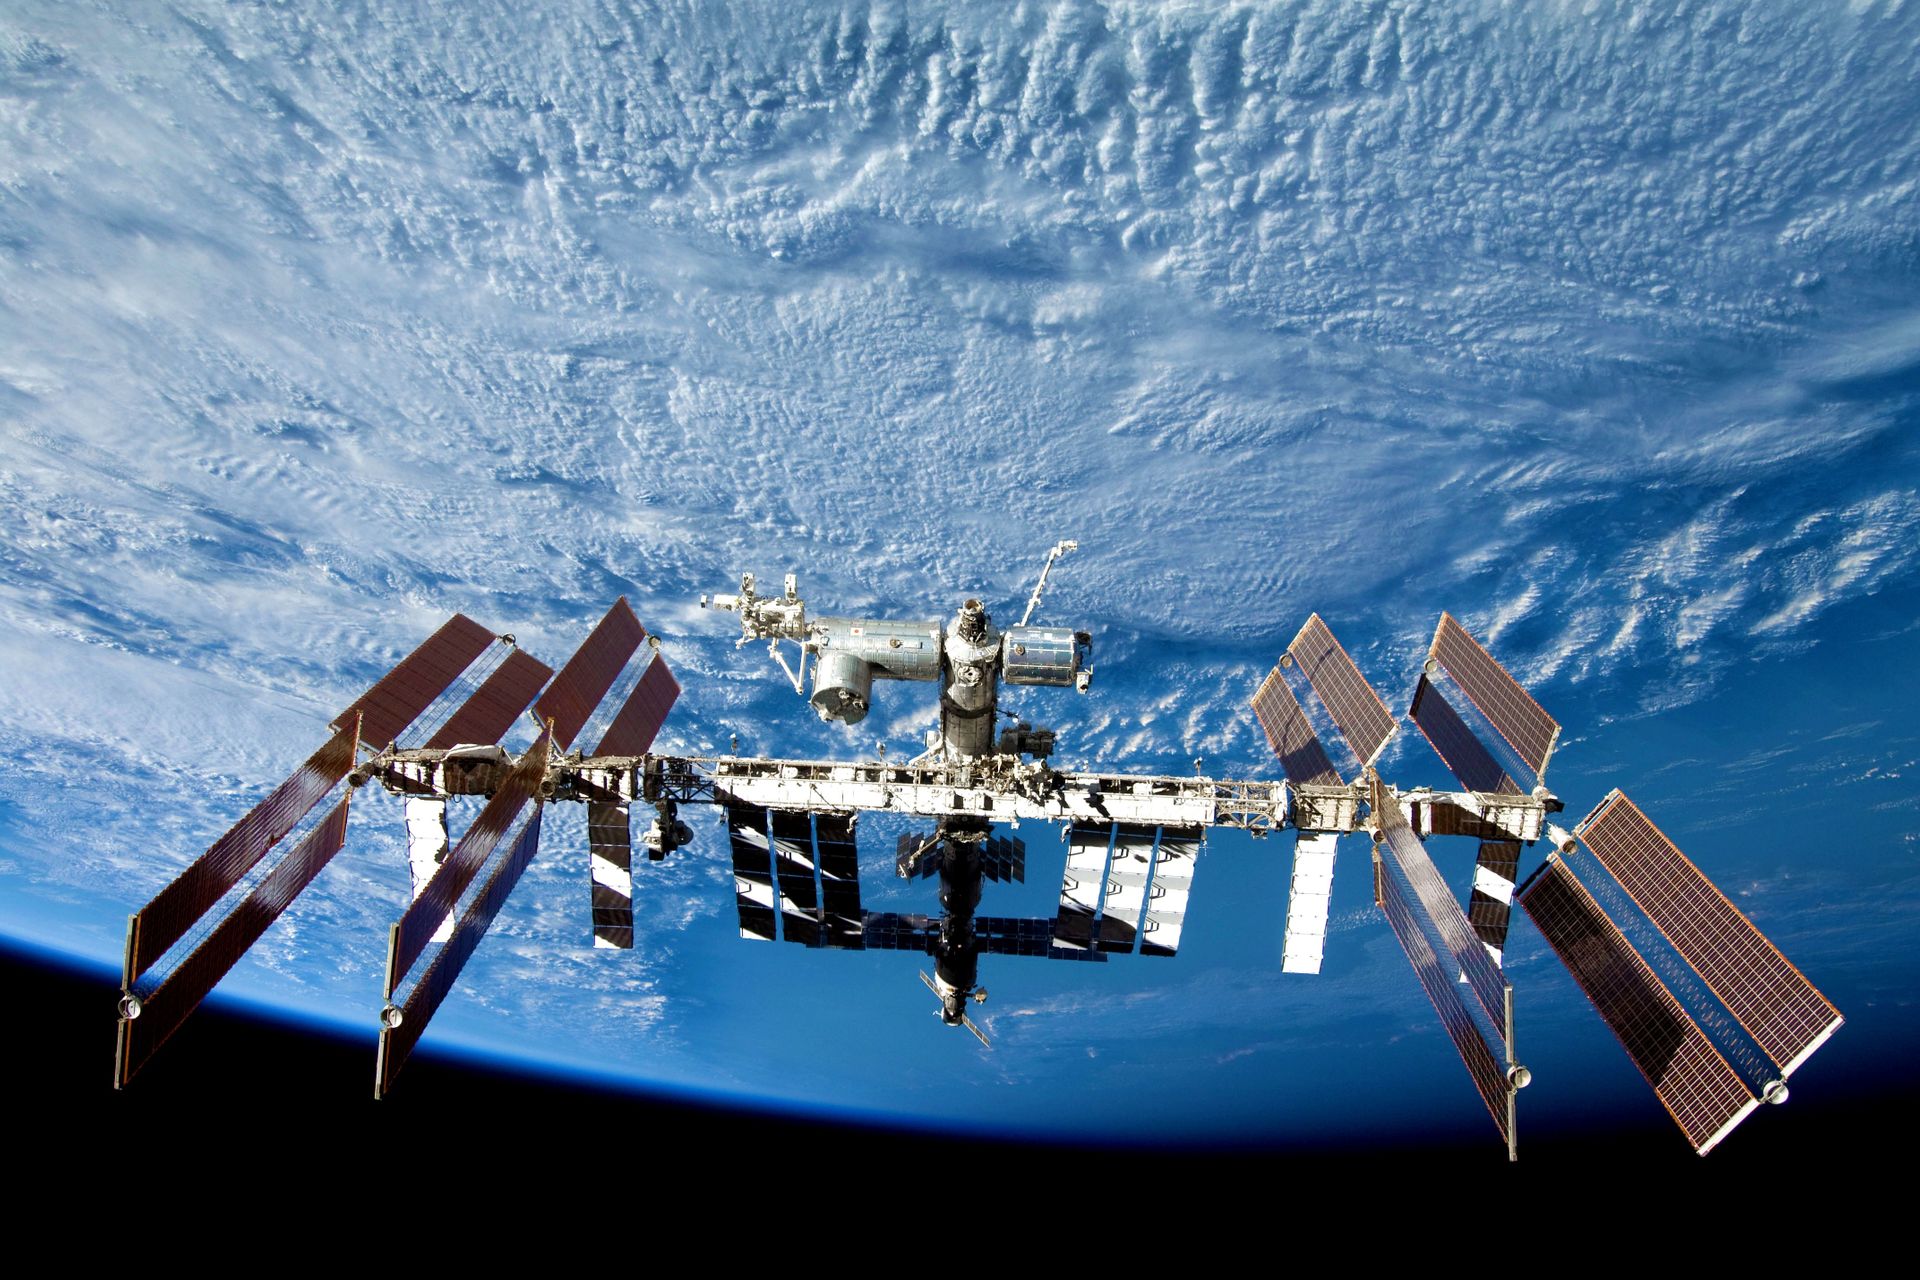 La International Space Station (la Stazione Spaziale Internazionale in lingua italiana), in orbita intorno alla Terra dal 1998. Se ne prevede il rientro - controllato - entro il 2028, a meno che qualche privato non decida di…comprarsela?